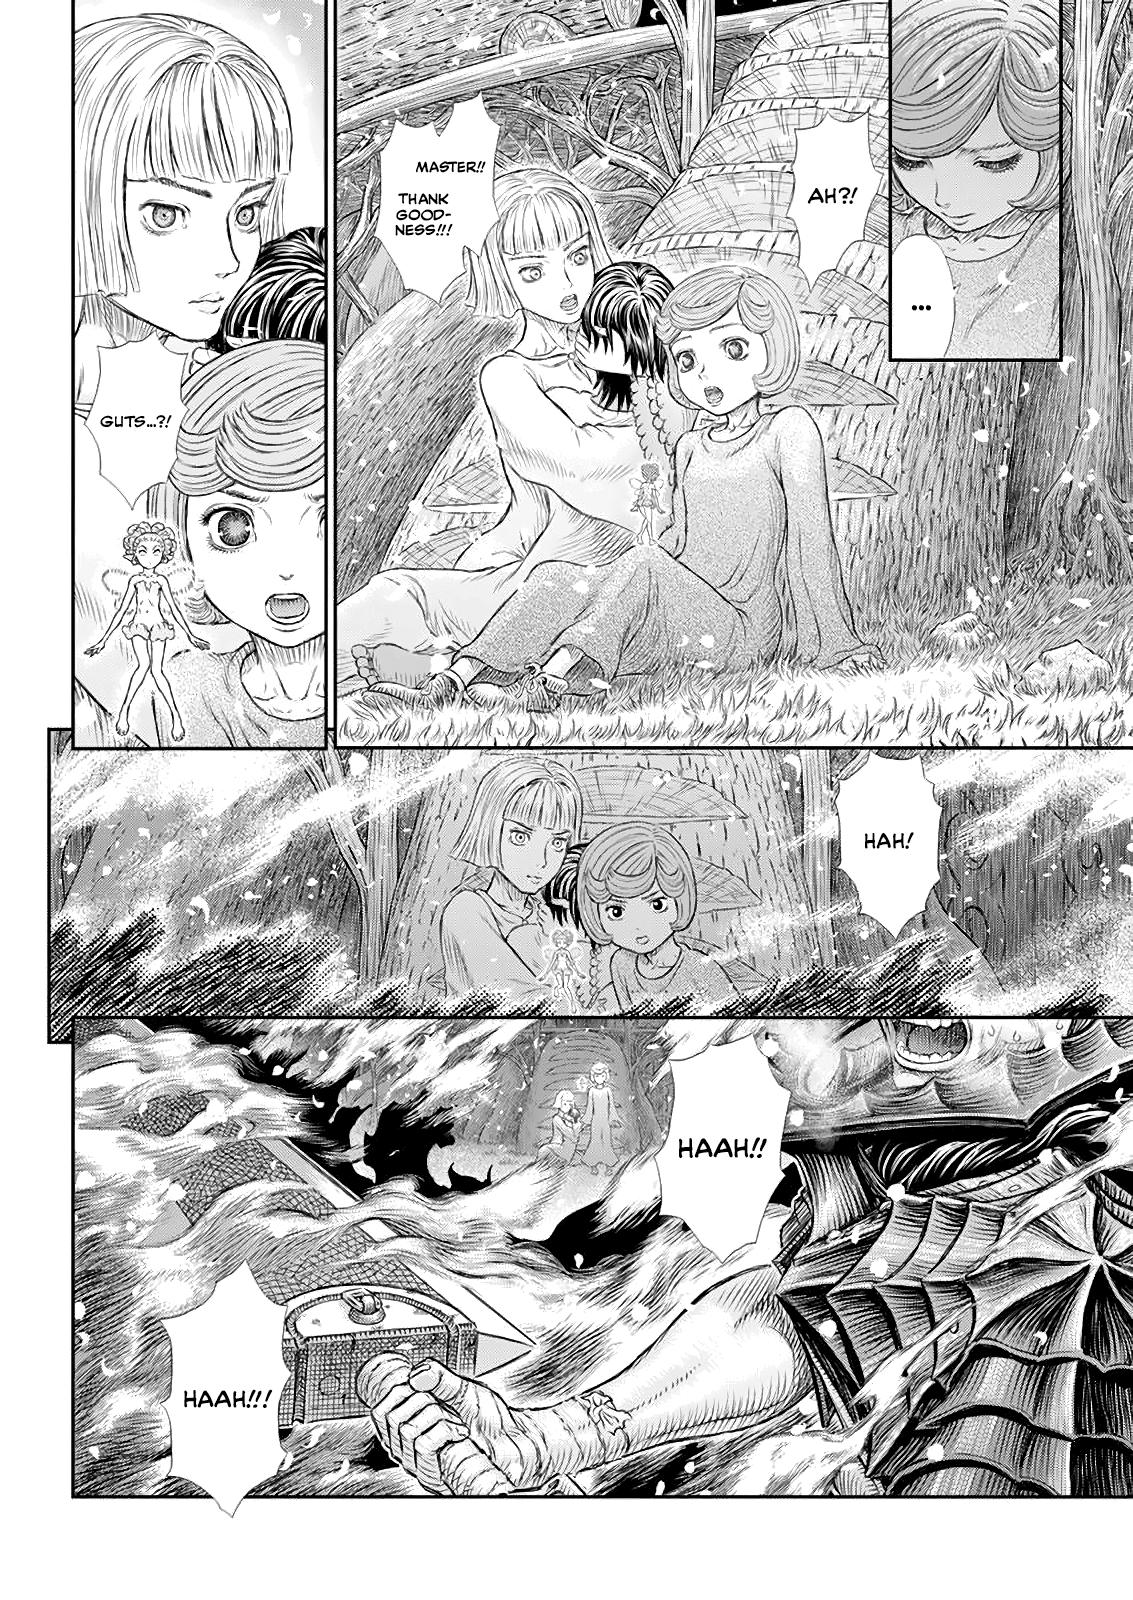 Berserk Manga Chapter 366 image 10